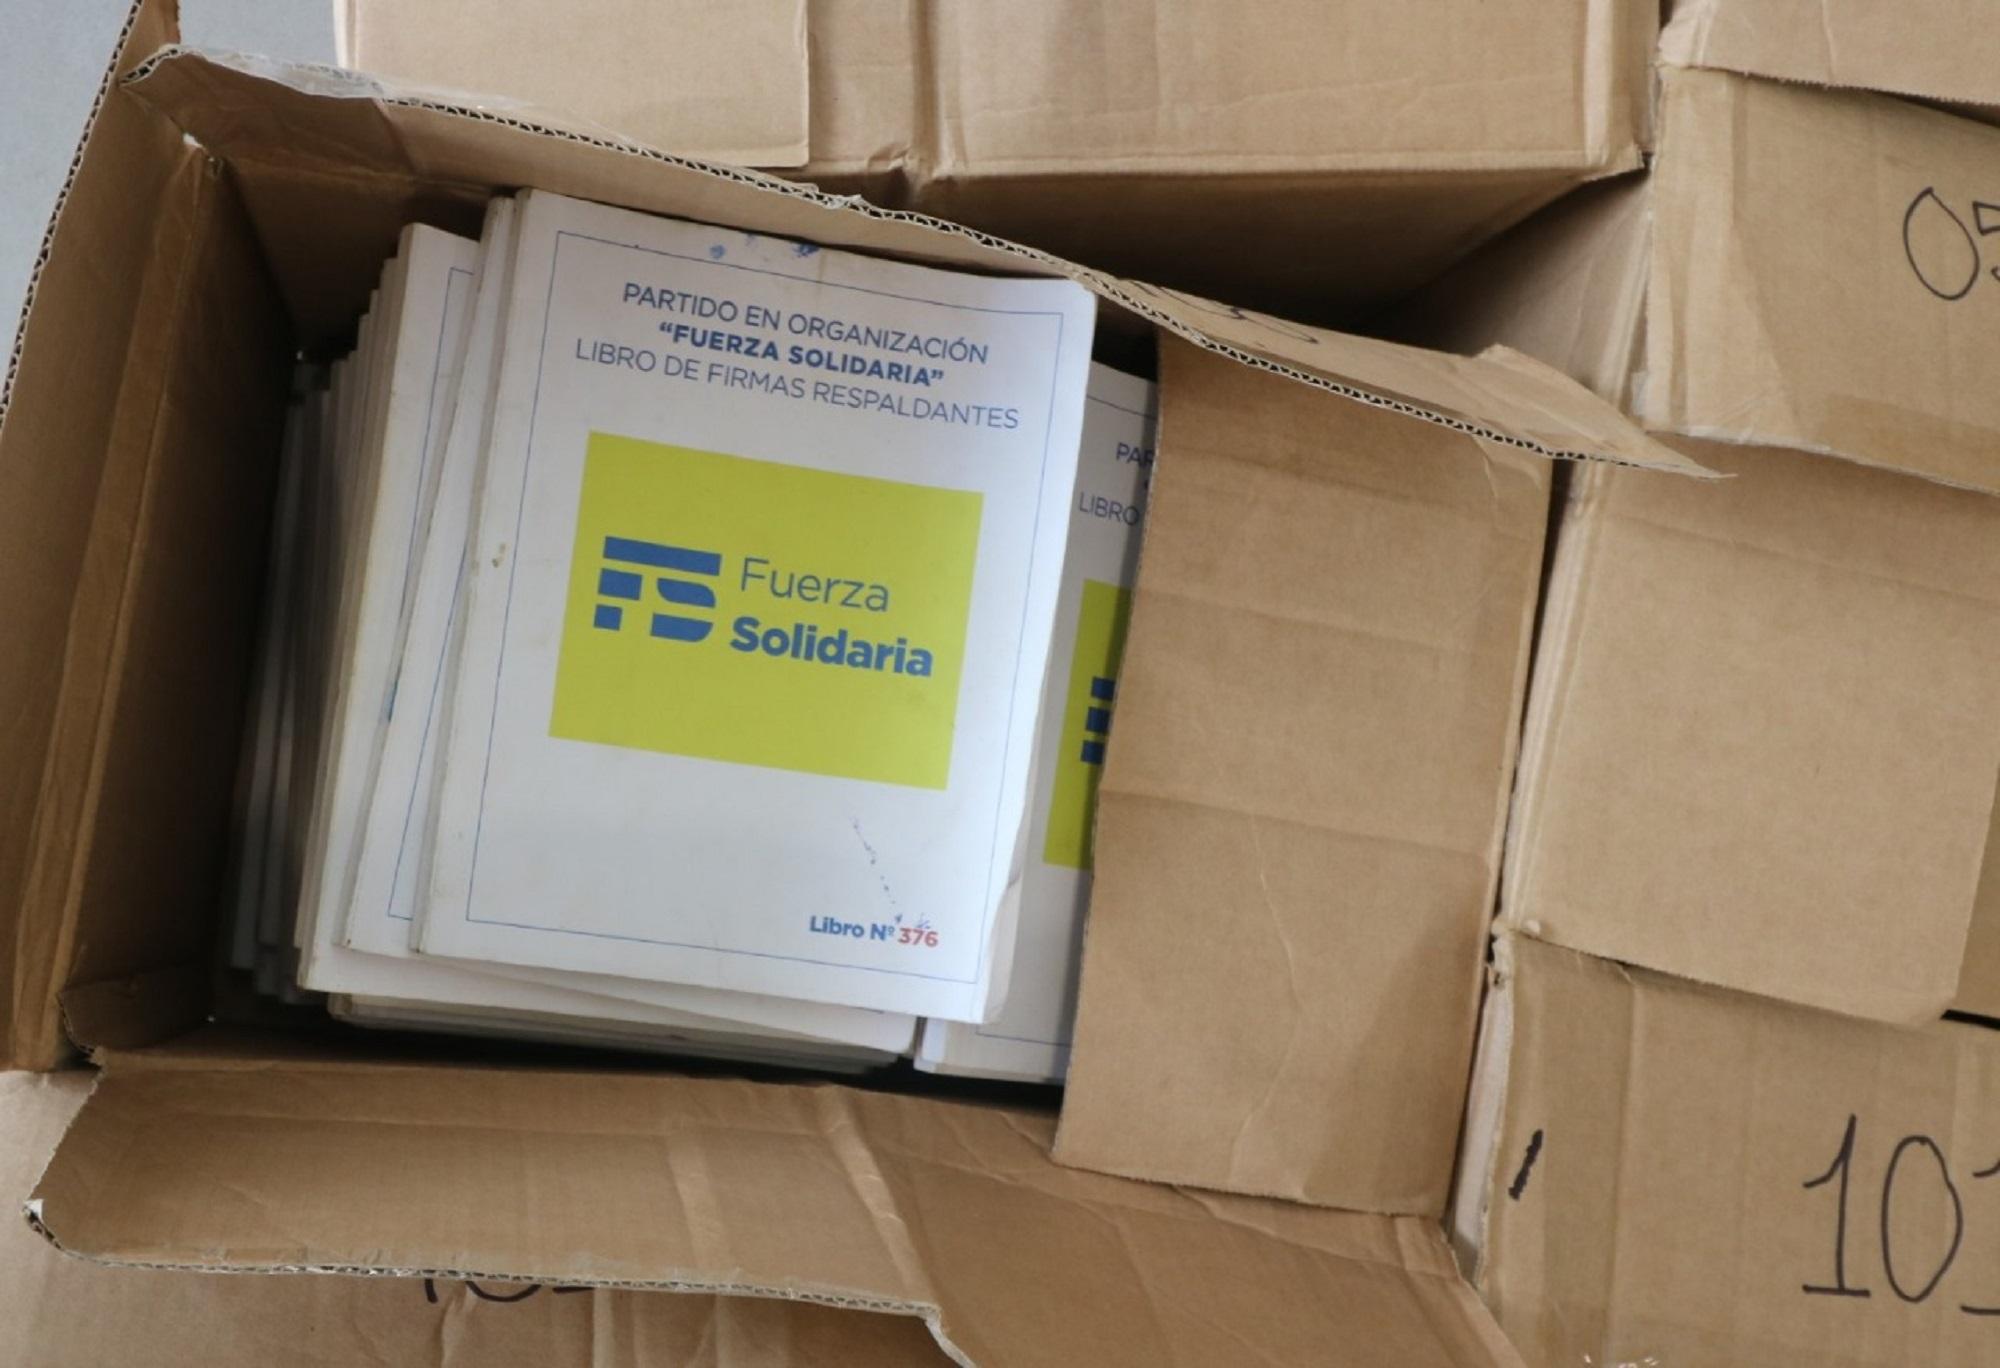 Fuerza Solidaria proyectó usar solo 700 libros para conseguir las firmas de respaldantes para su inscripción como partido. Sin embargo, el tribunal le autorizó 200 libros más. Foto:cortesía.